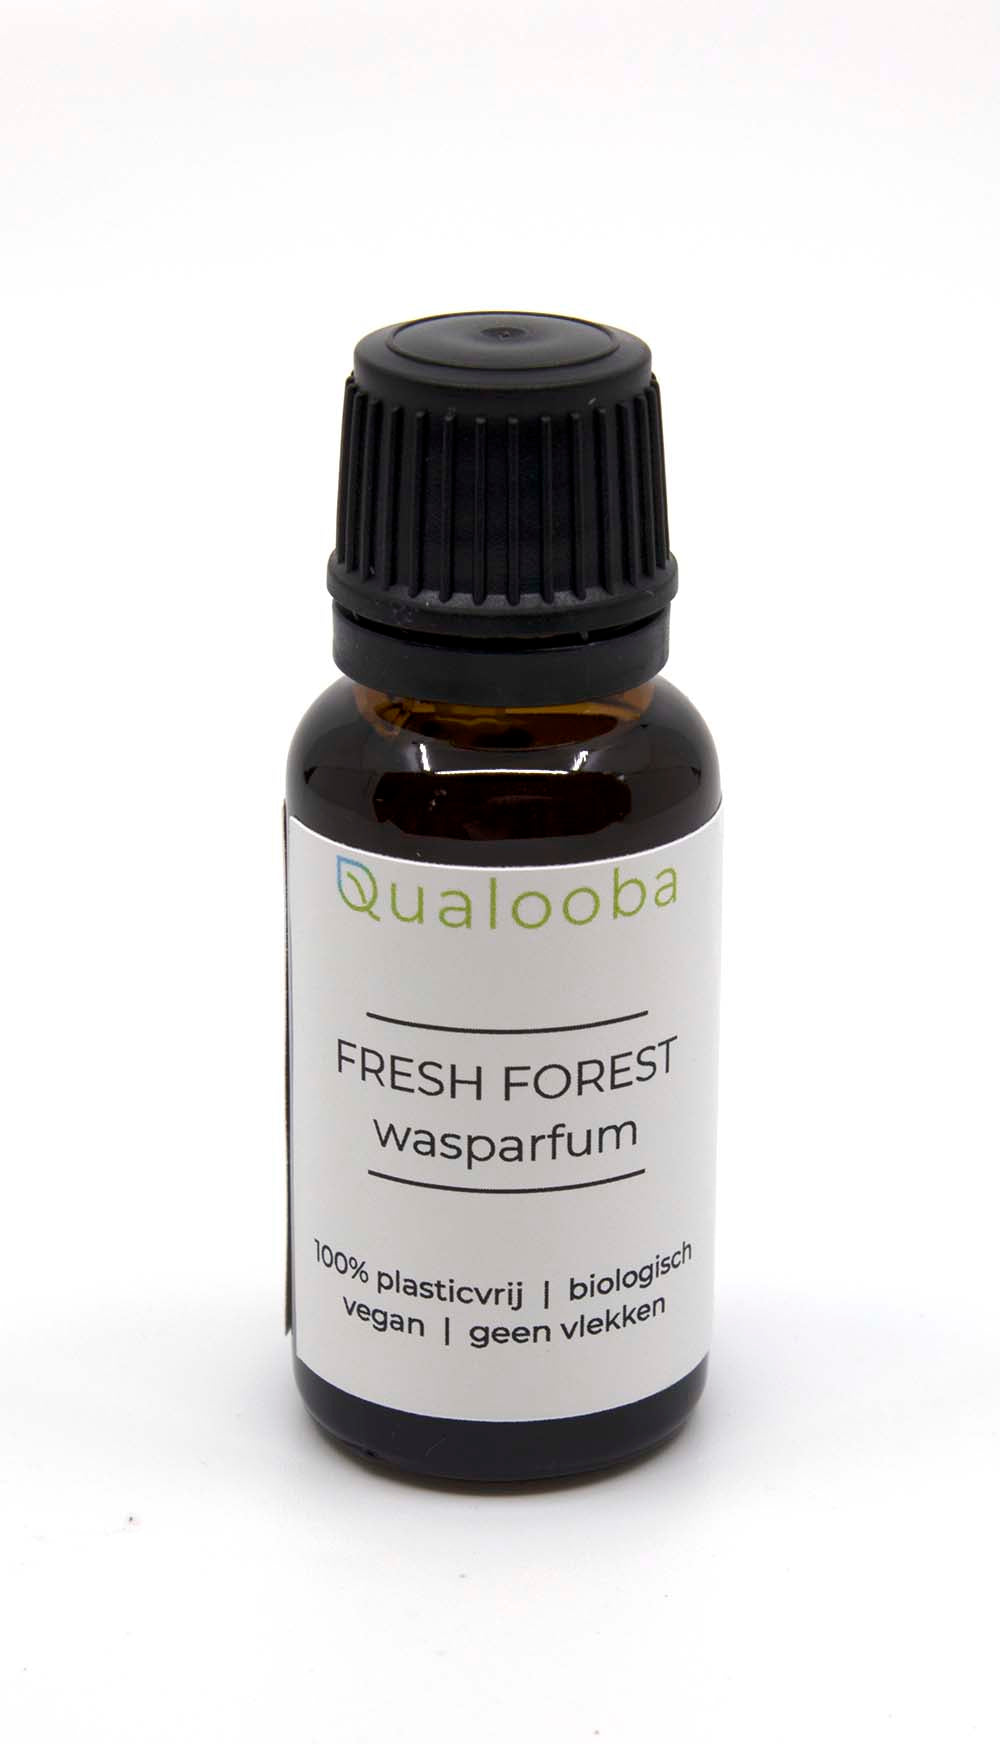 Wasparfum - Fresh Forest